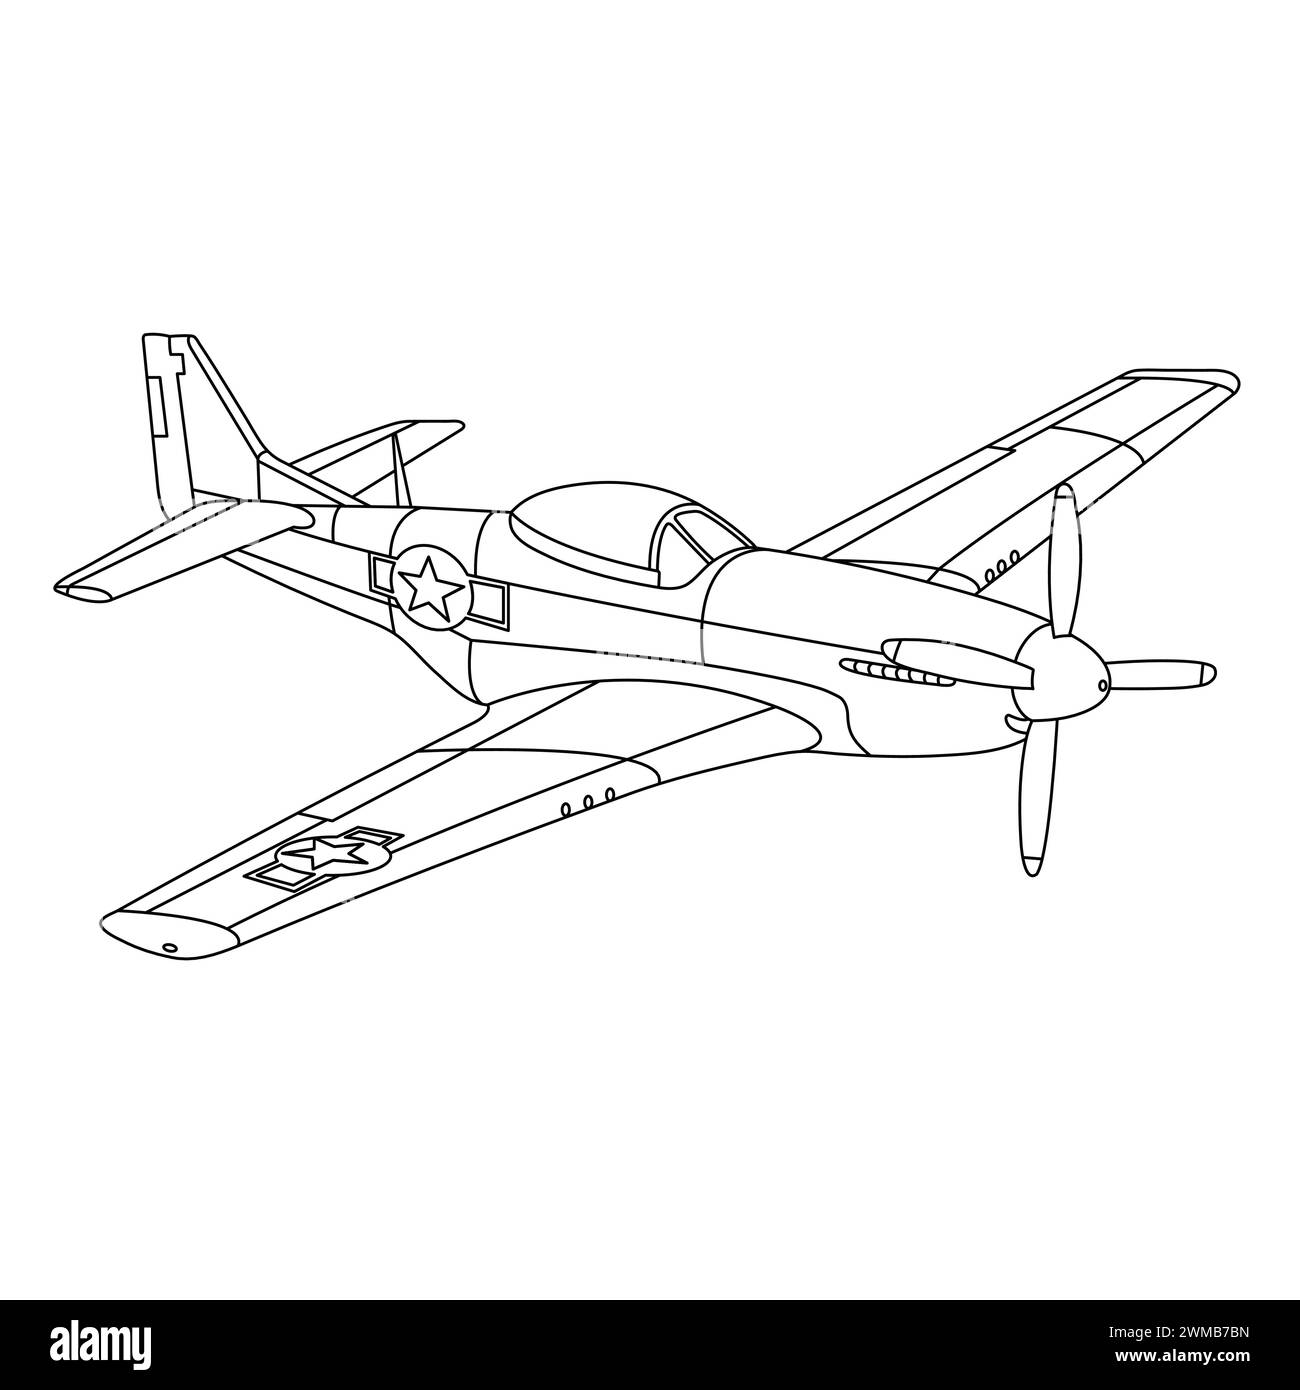 P-51 Mustang Aircraft War World II Fighter Coloring Page. Aereo da guerra d'epoca. Aereo cartoon. Illustrazione vettore caccia-bombardiere militare Illustrazione Vettoriale